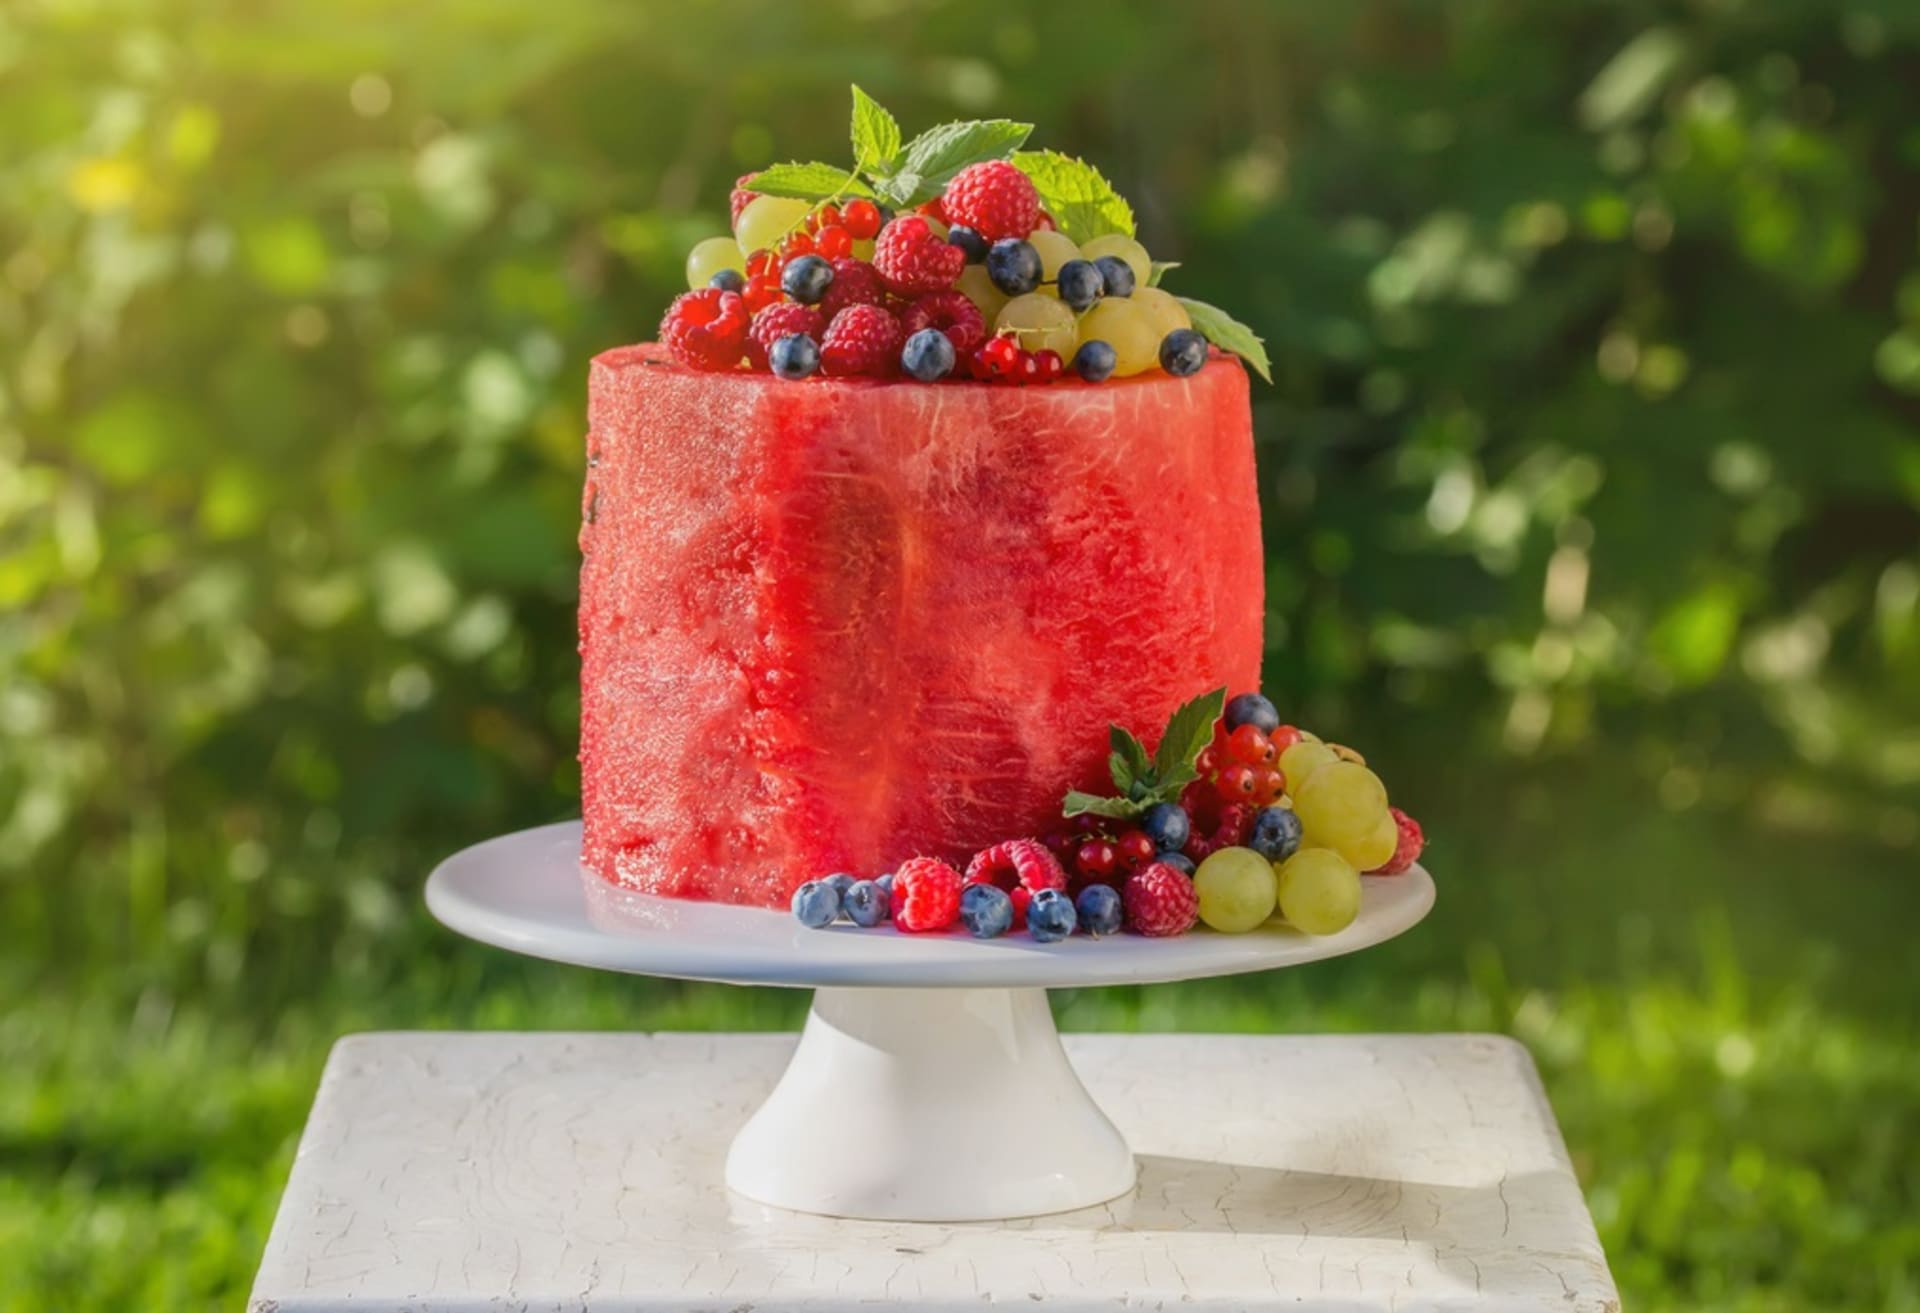 Melounový dort je vtipná alternativa dortu klasického